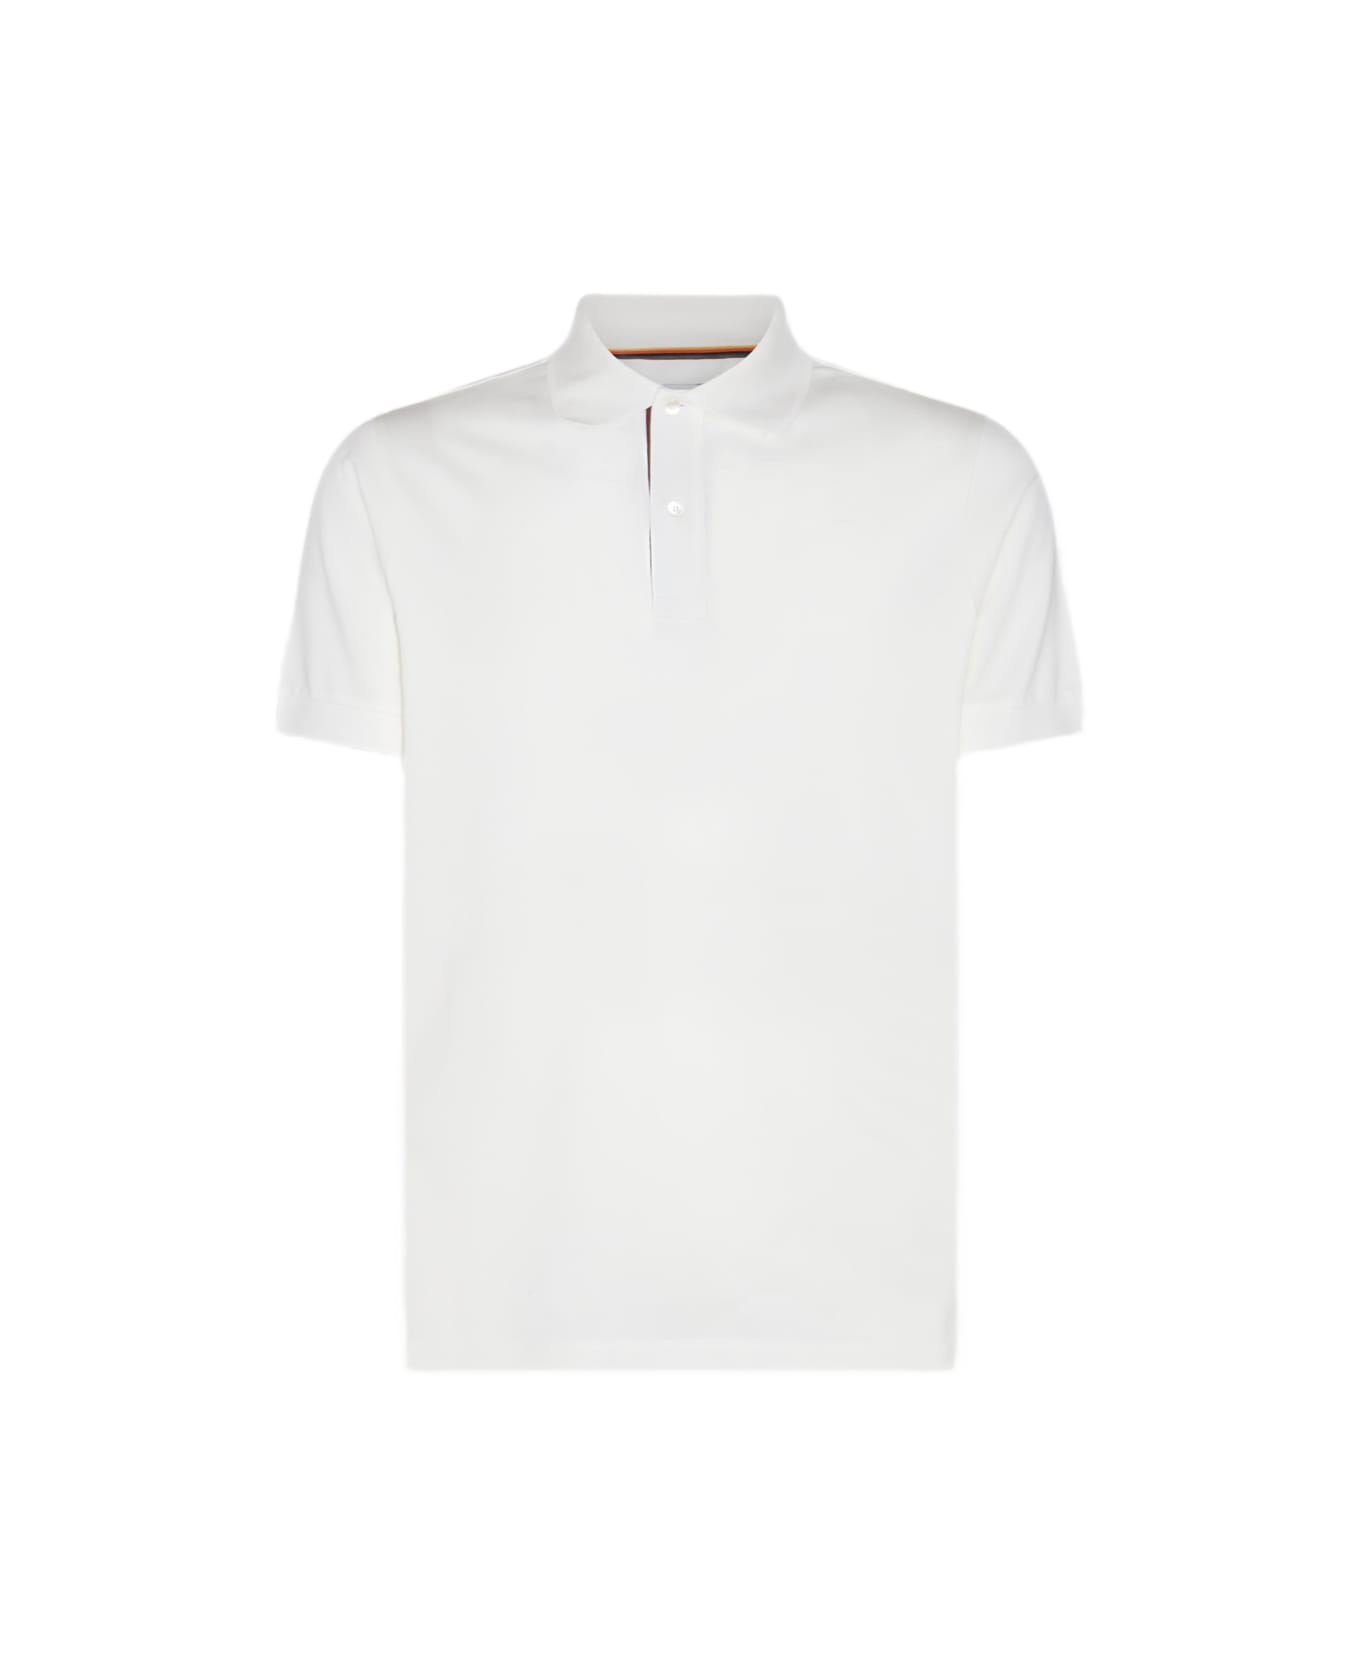 Paul Smith White Cotton Polo Shirt - White